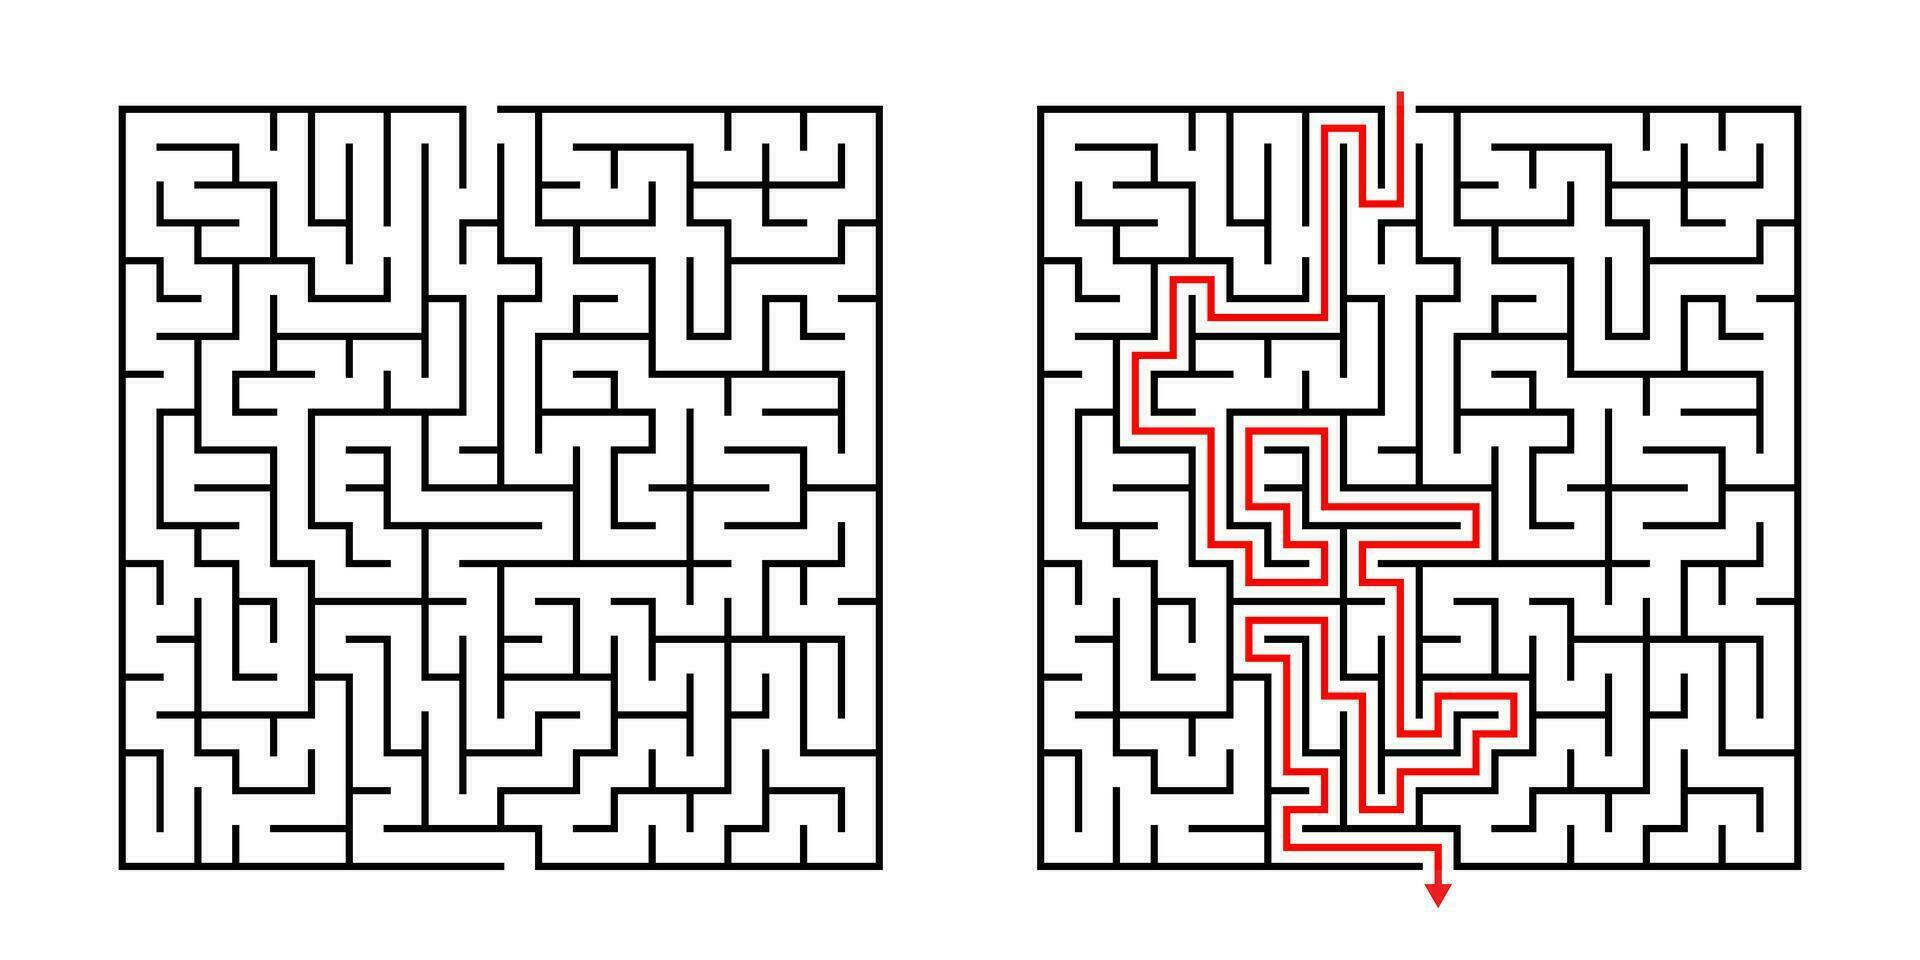 vetor quadrado Labirinto - labirinto com incluído solução dentro Preto vermelho. engraçado educacional mente jogos para coordenação, problemas resolvendo, decisão fazer Habilidades teste.